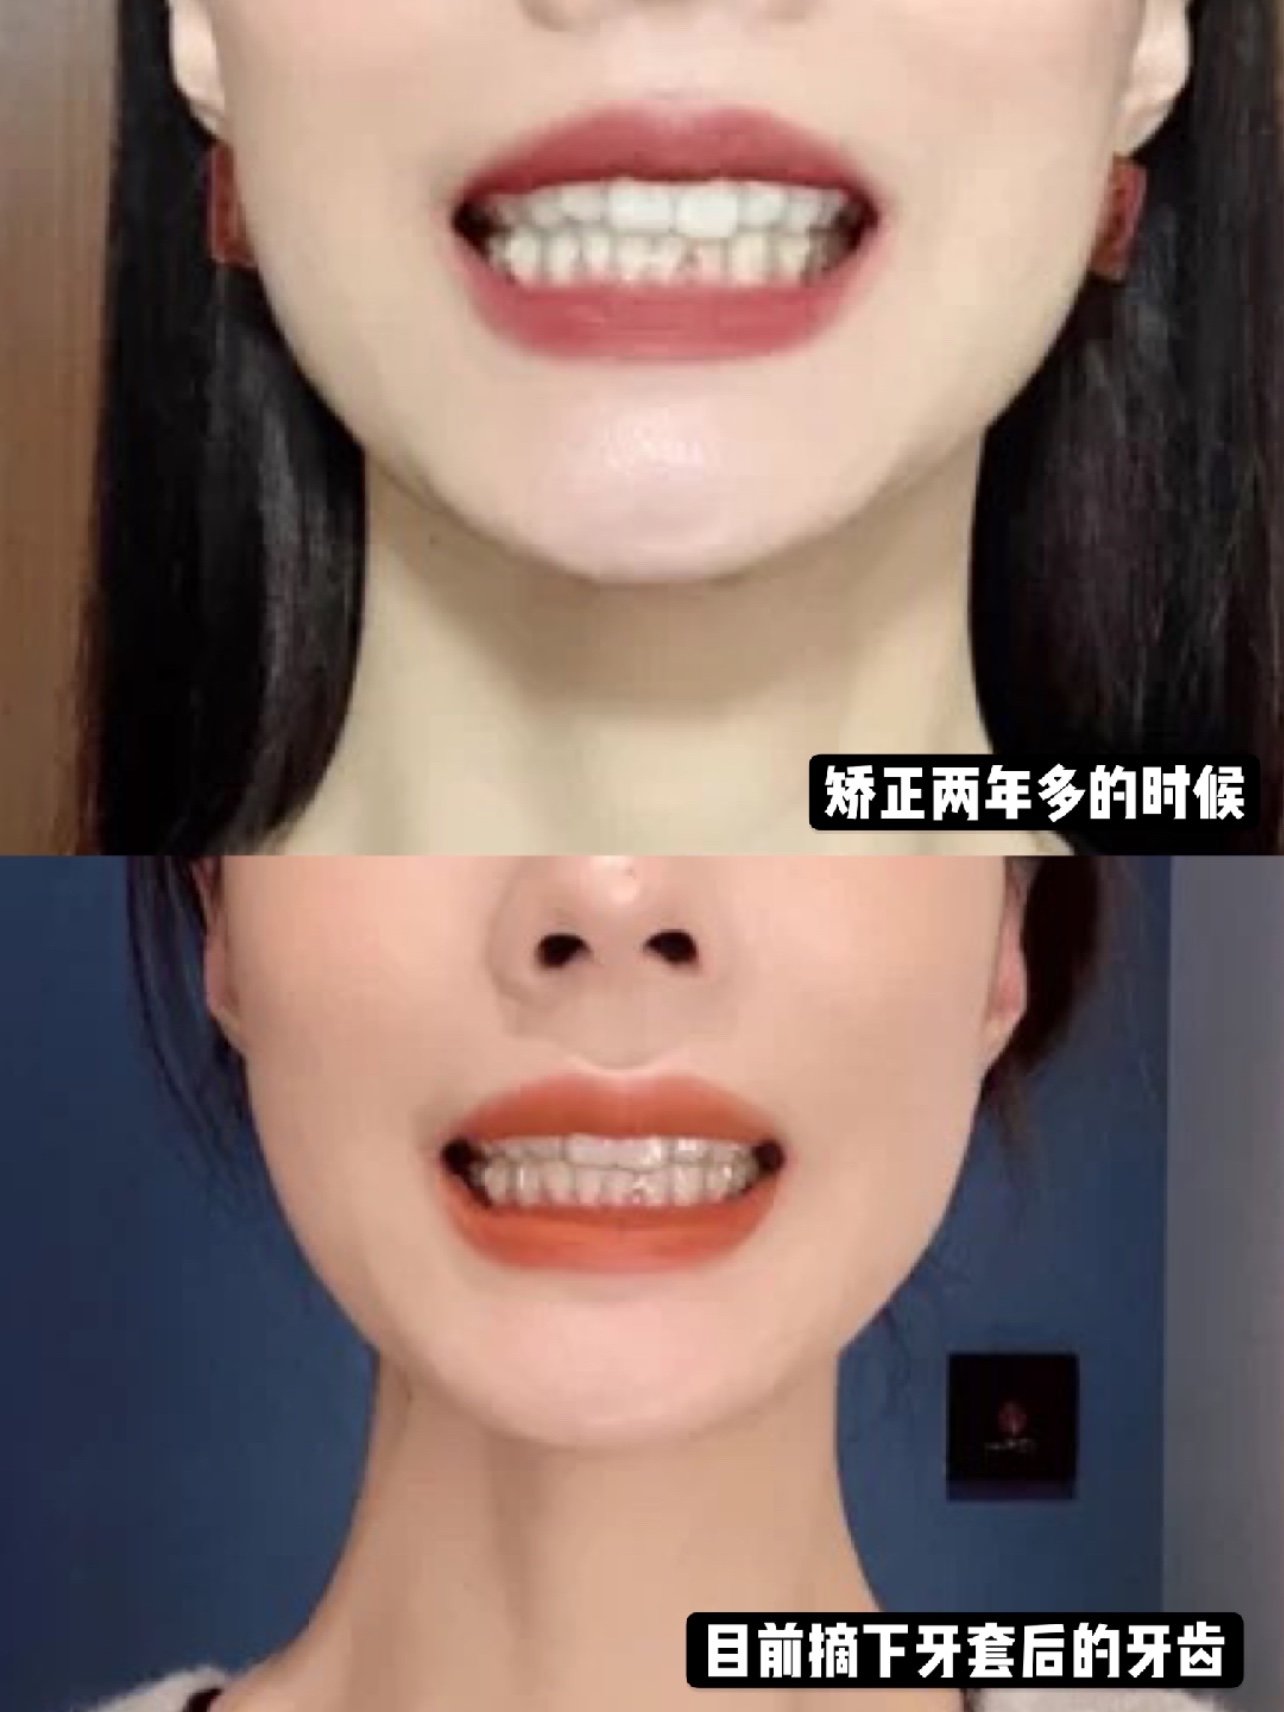 正地点:北京拜博 矫正医师:周强医生 小姐姐属于大龄正畸,牙齿的咬合